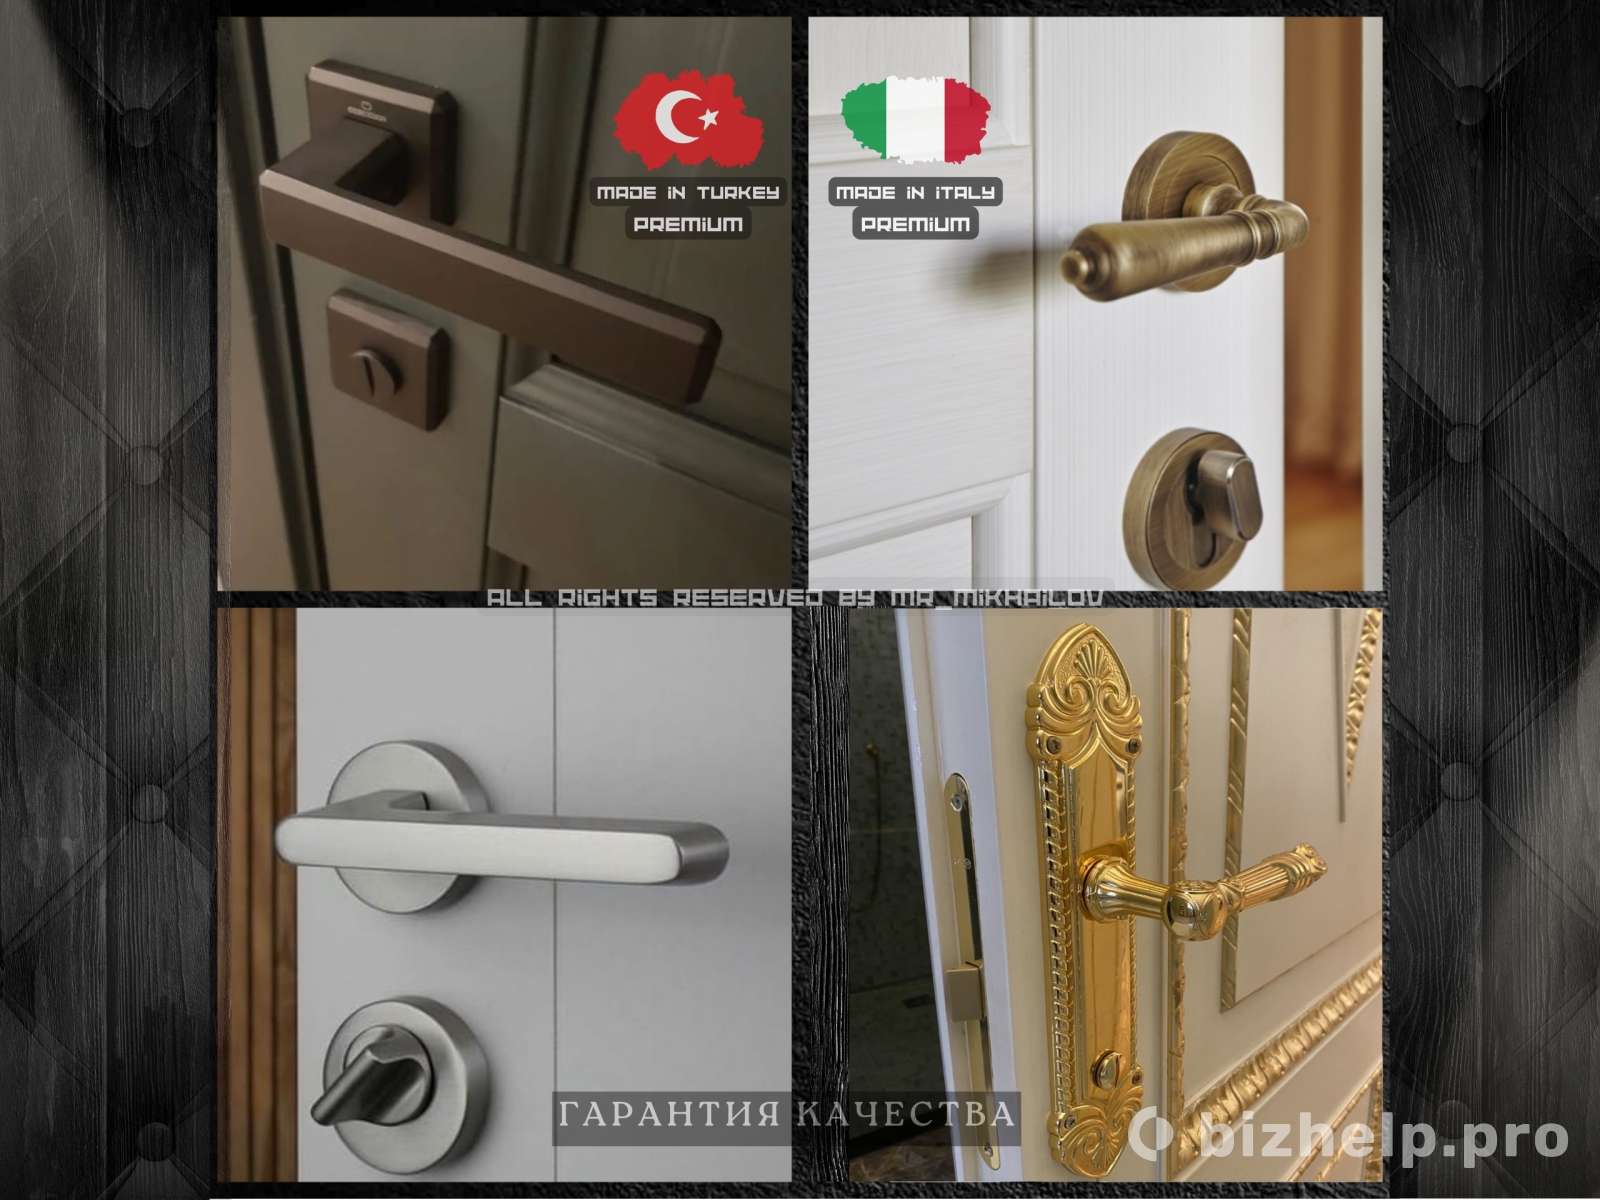 Фотография 1: Дверные ручки / Оконные ручки / Дверная фурнитура / Италия /Турция